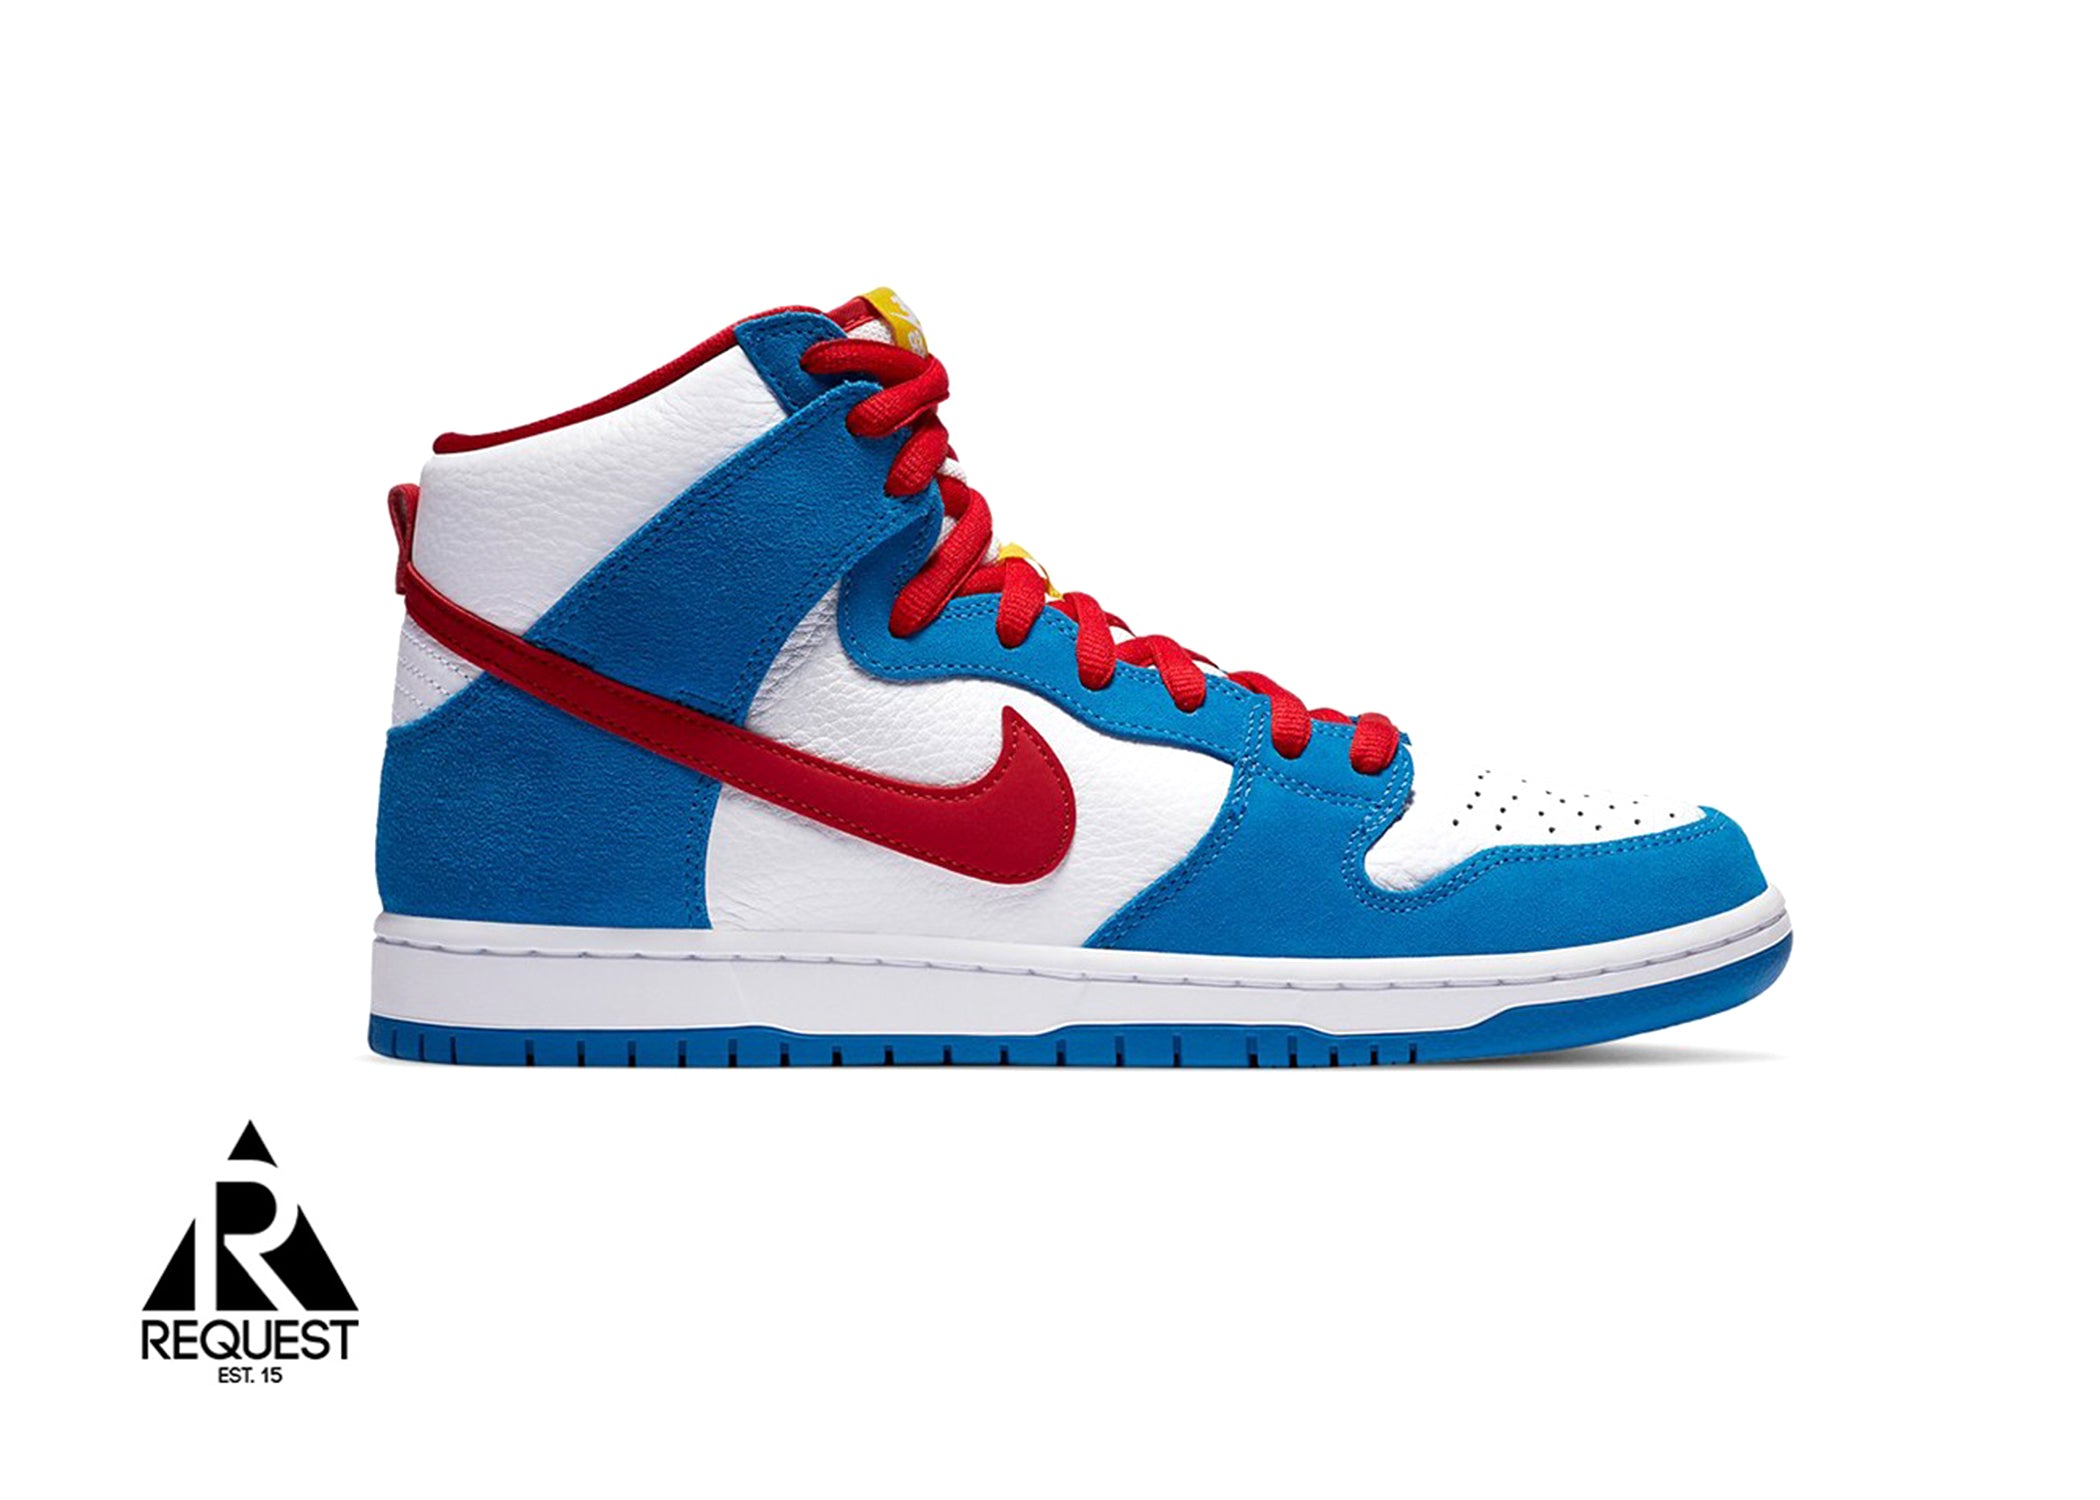 Nike SB Dunk High “Kevin Perez Doraemon”